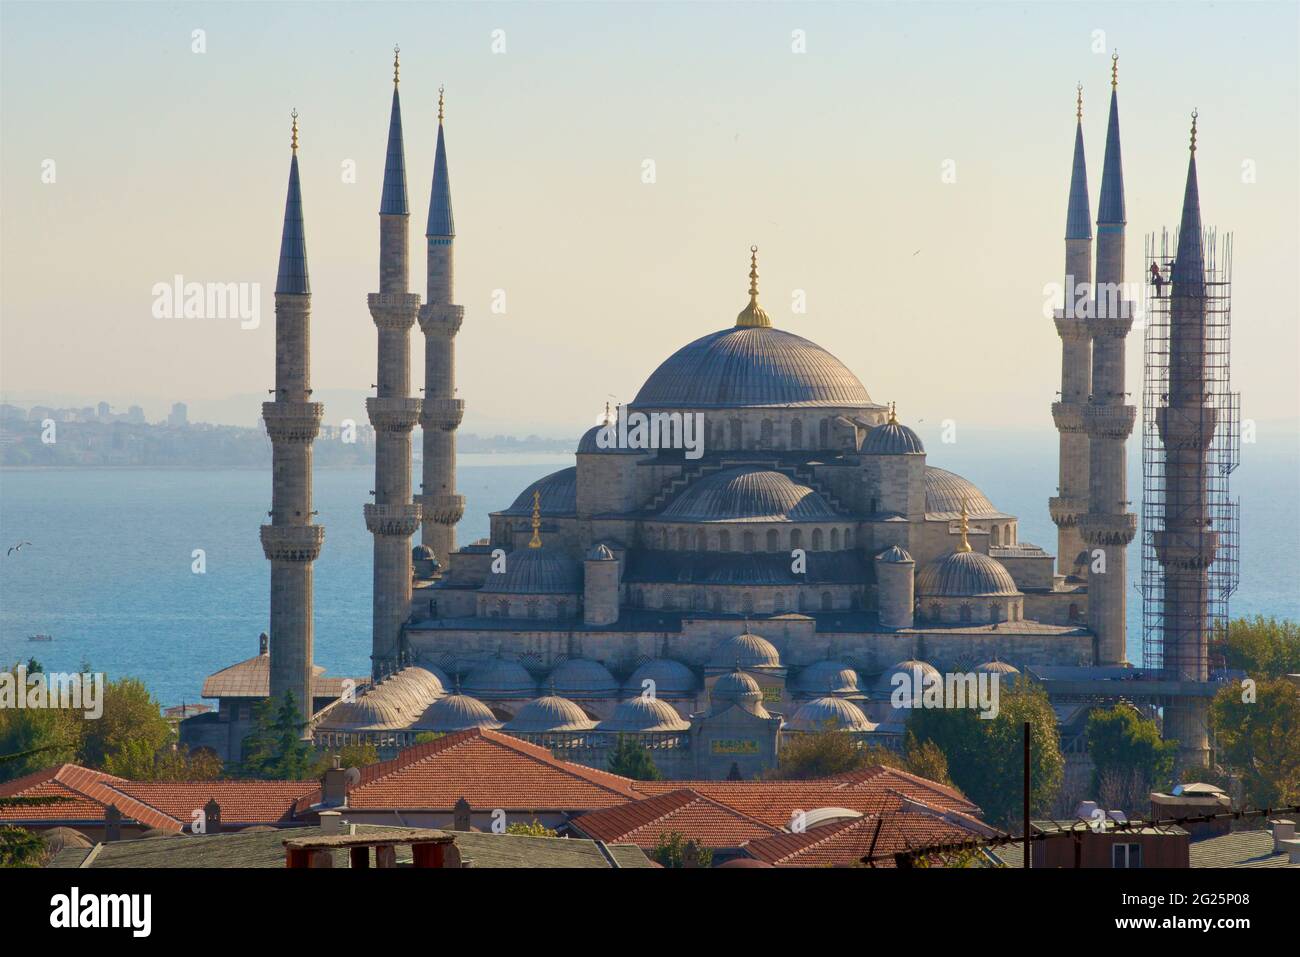 Moschea del Sultano Ahmed (in turco: Sultano Ahmet Camii), conosciuta anche come Moschea Blu. Una moschea del venerdì dell'epoca ottomana situata a Istanbul, Turchia. Bosforo oltre Foto Stock